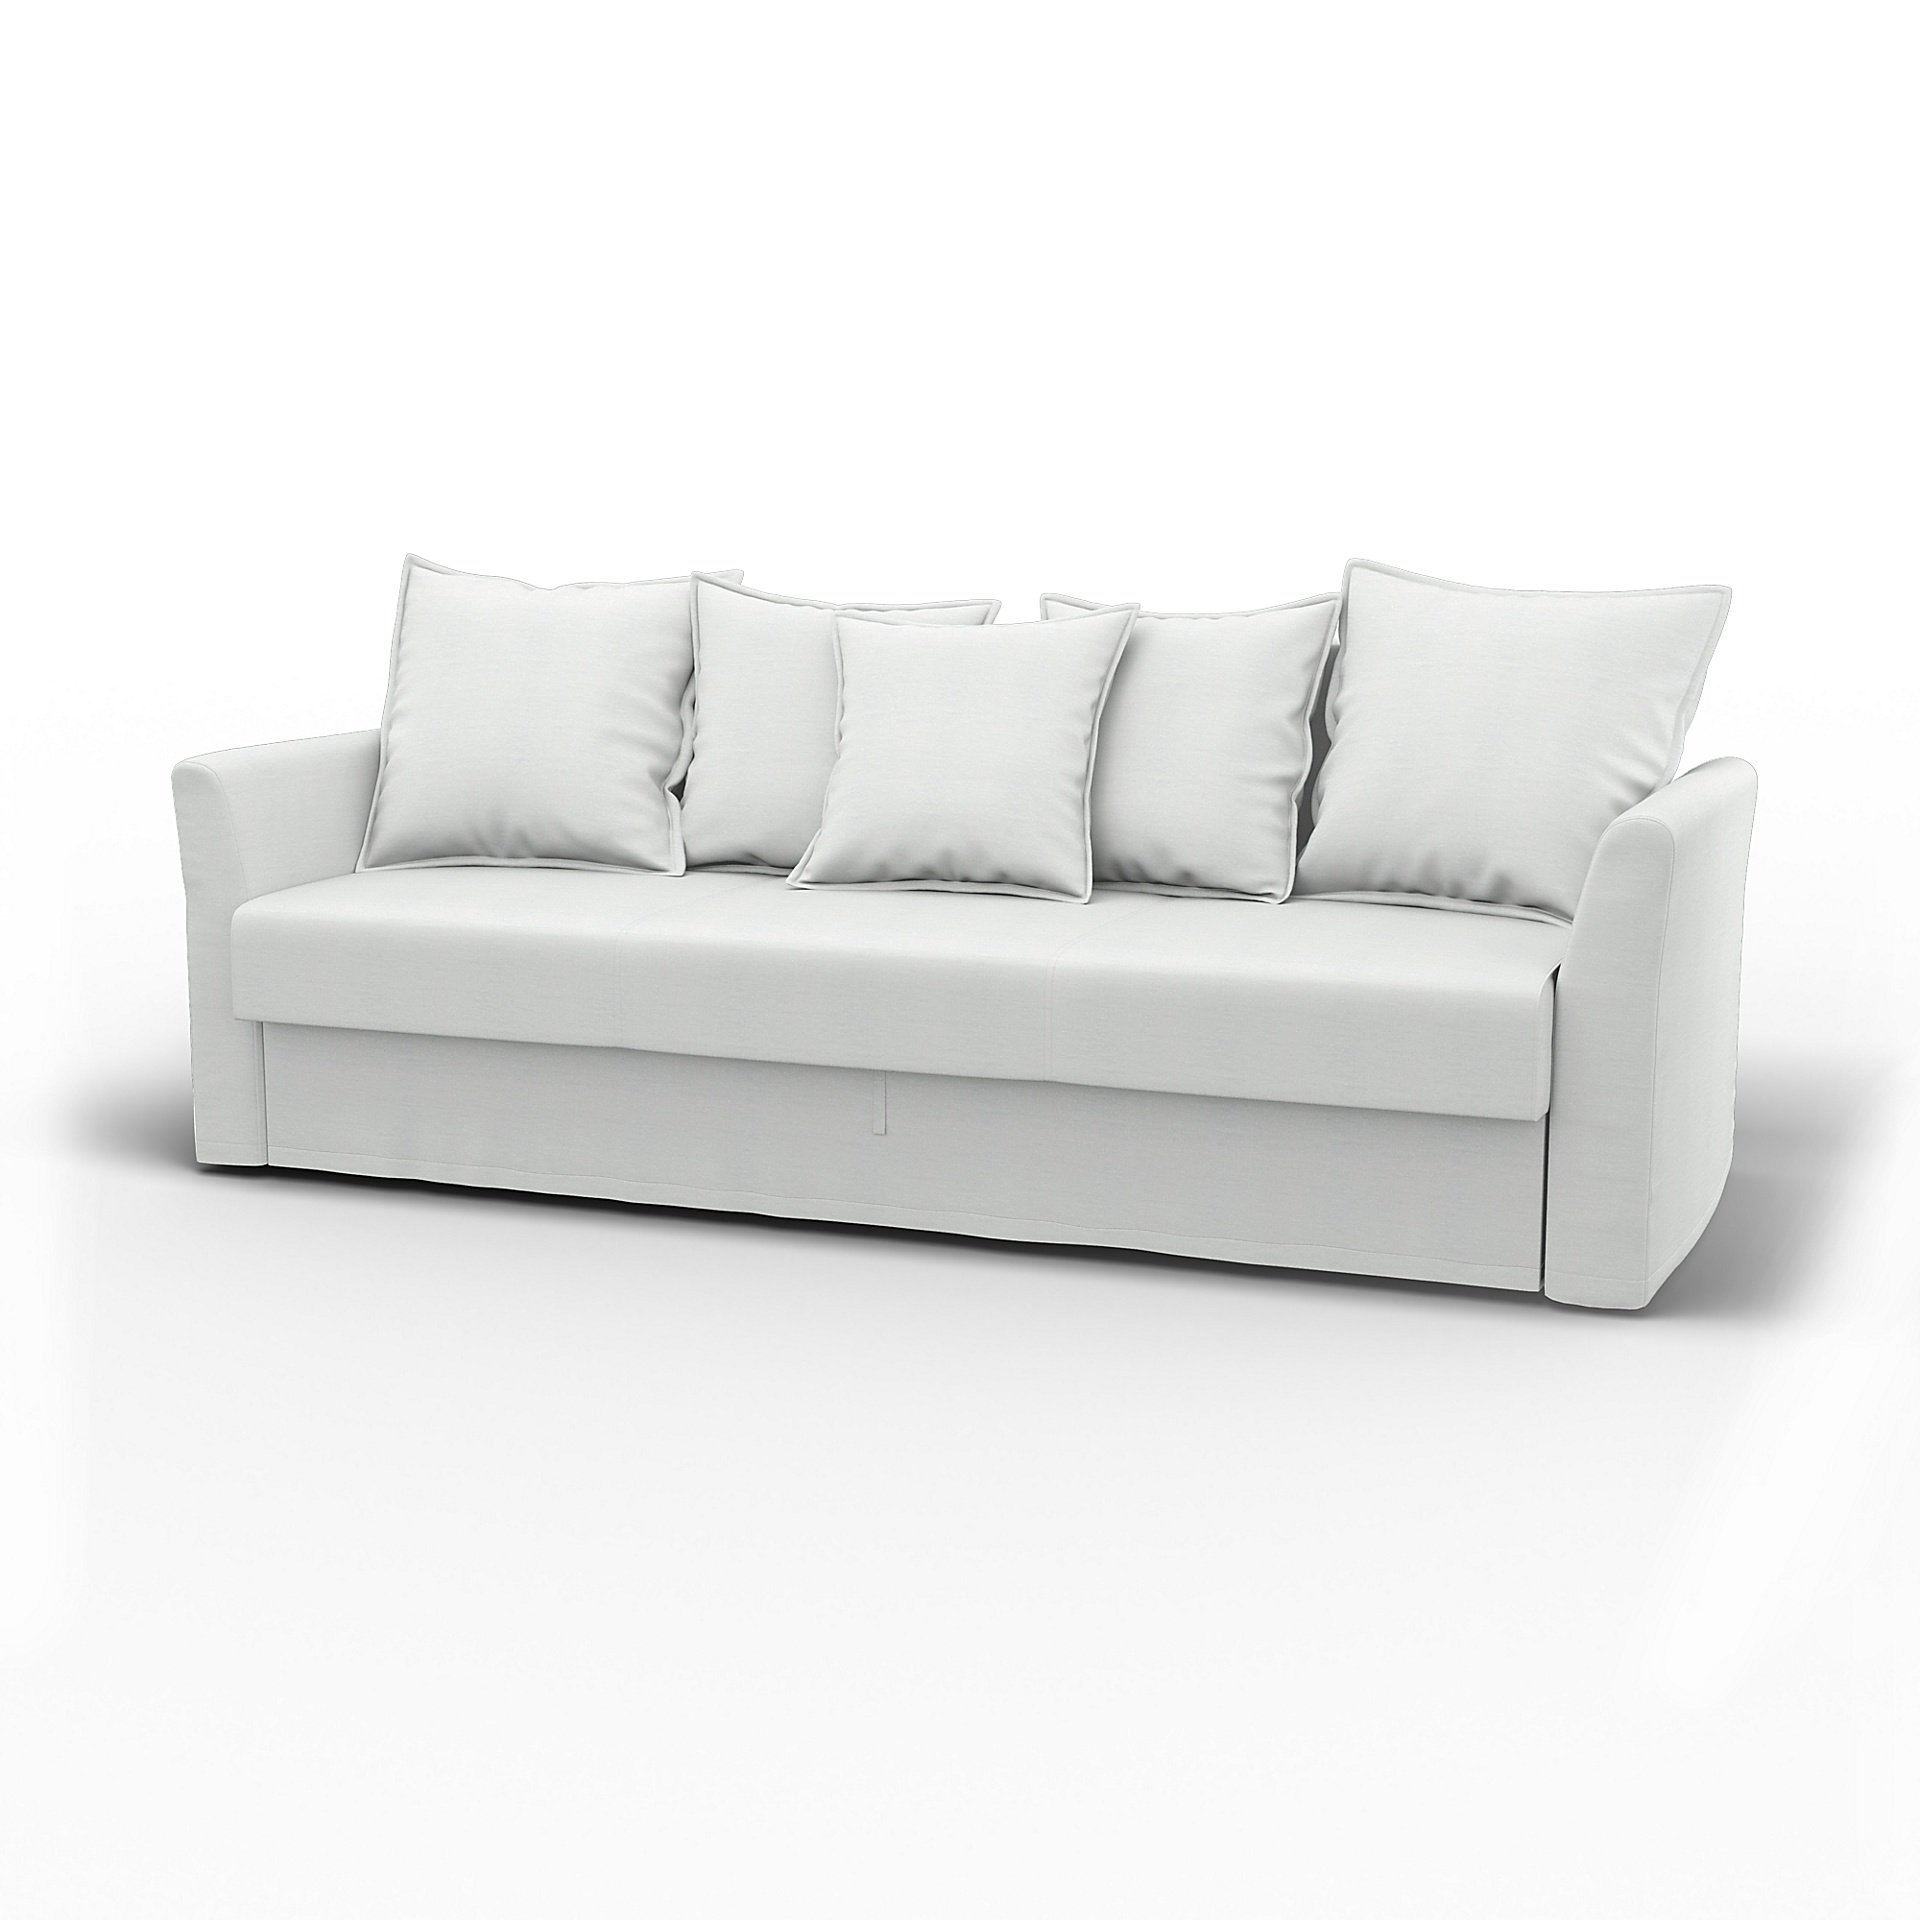 IKEA - Holmsund Sofabed, White, Linen - Bemz